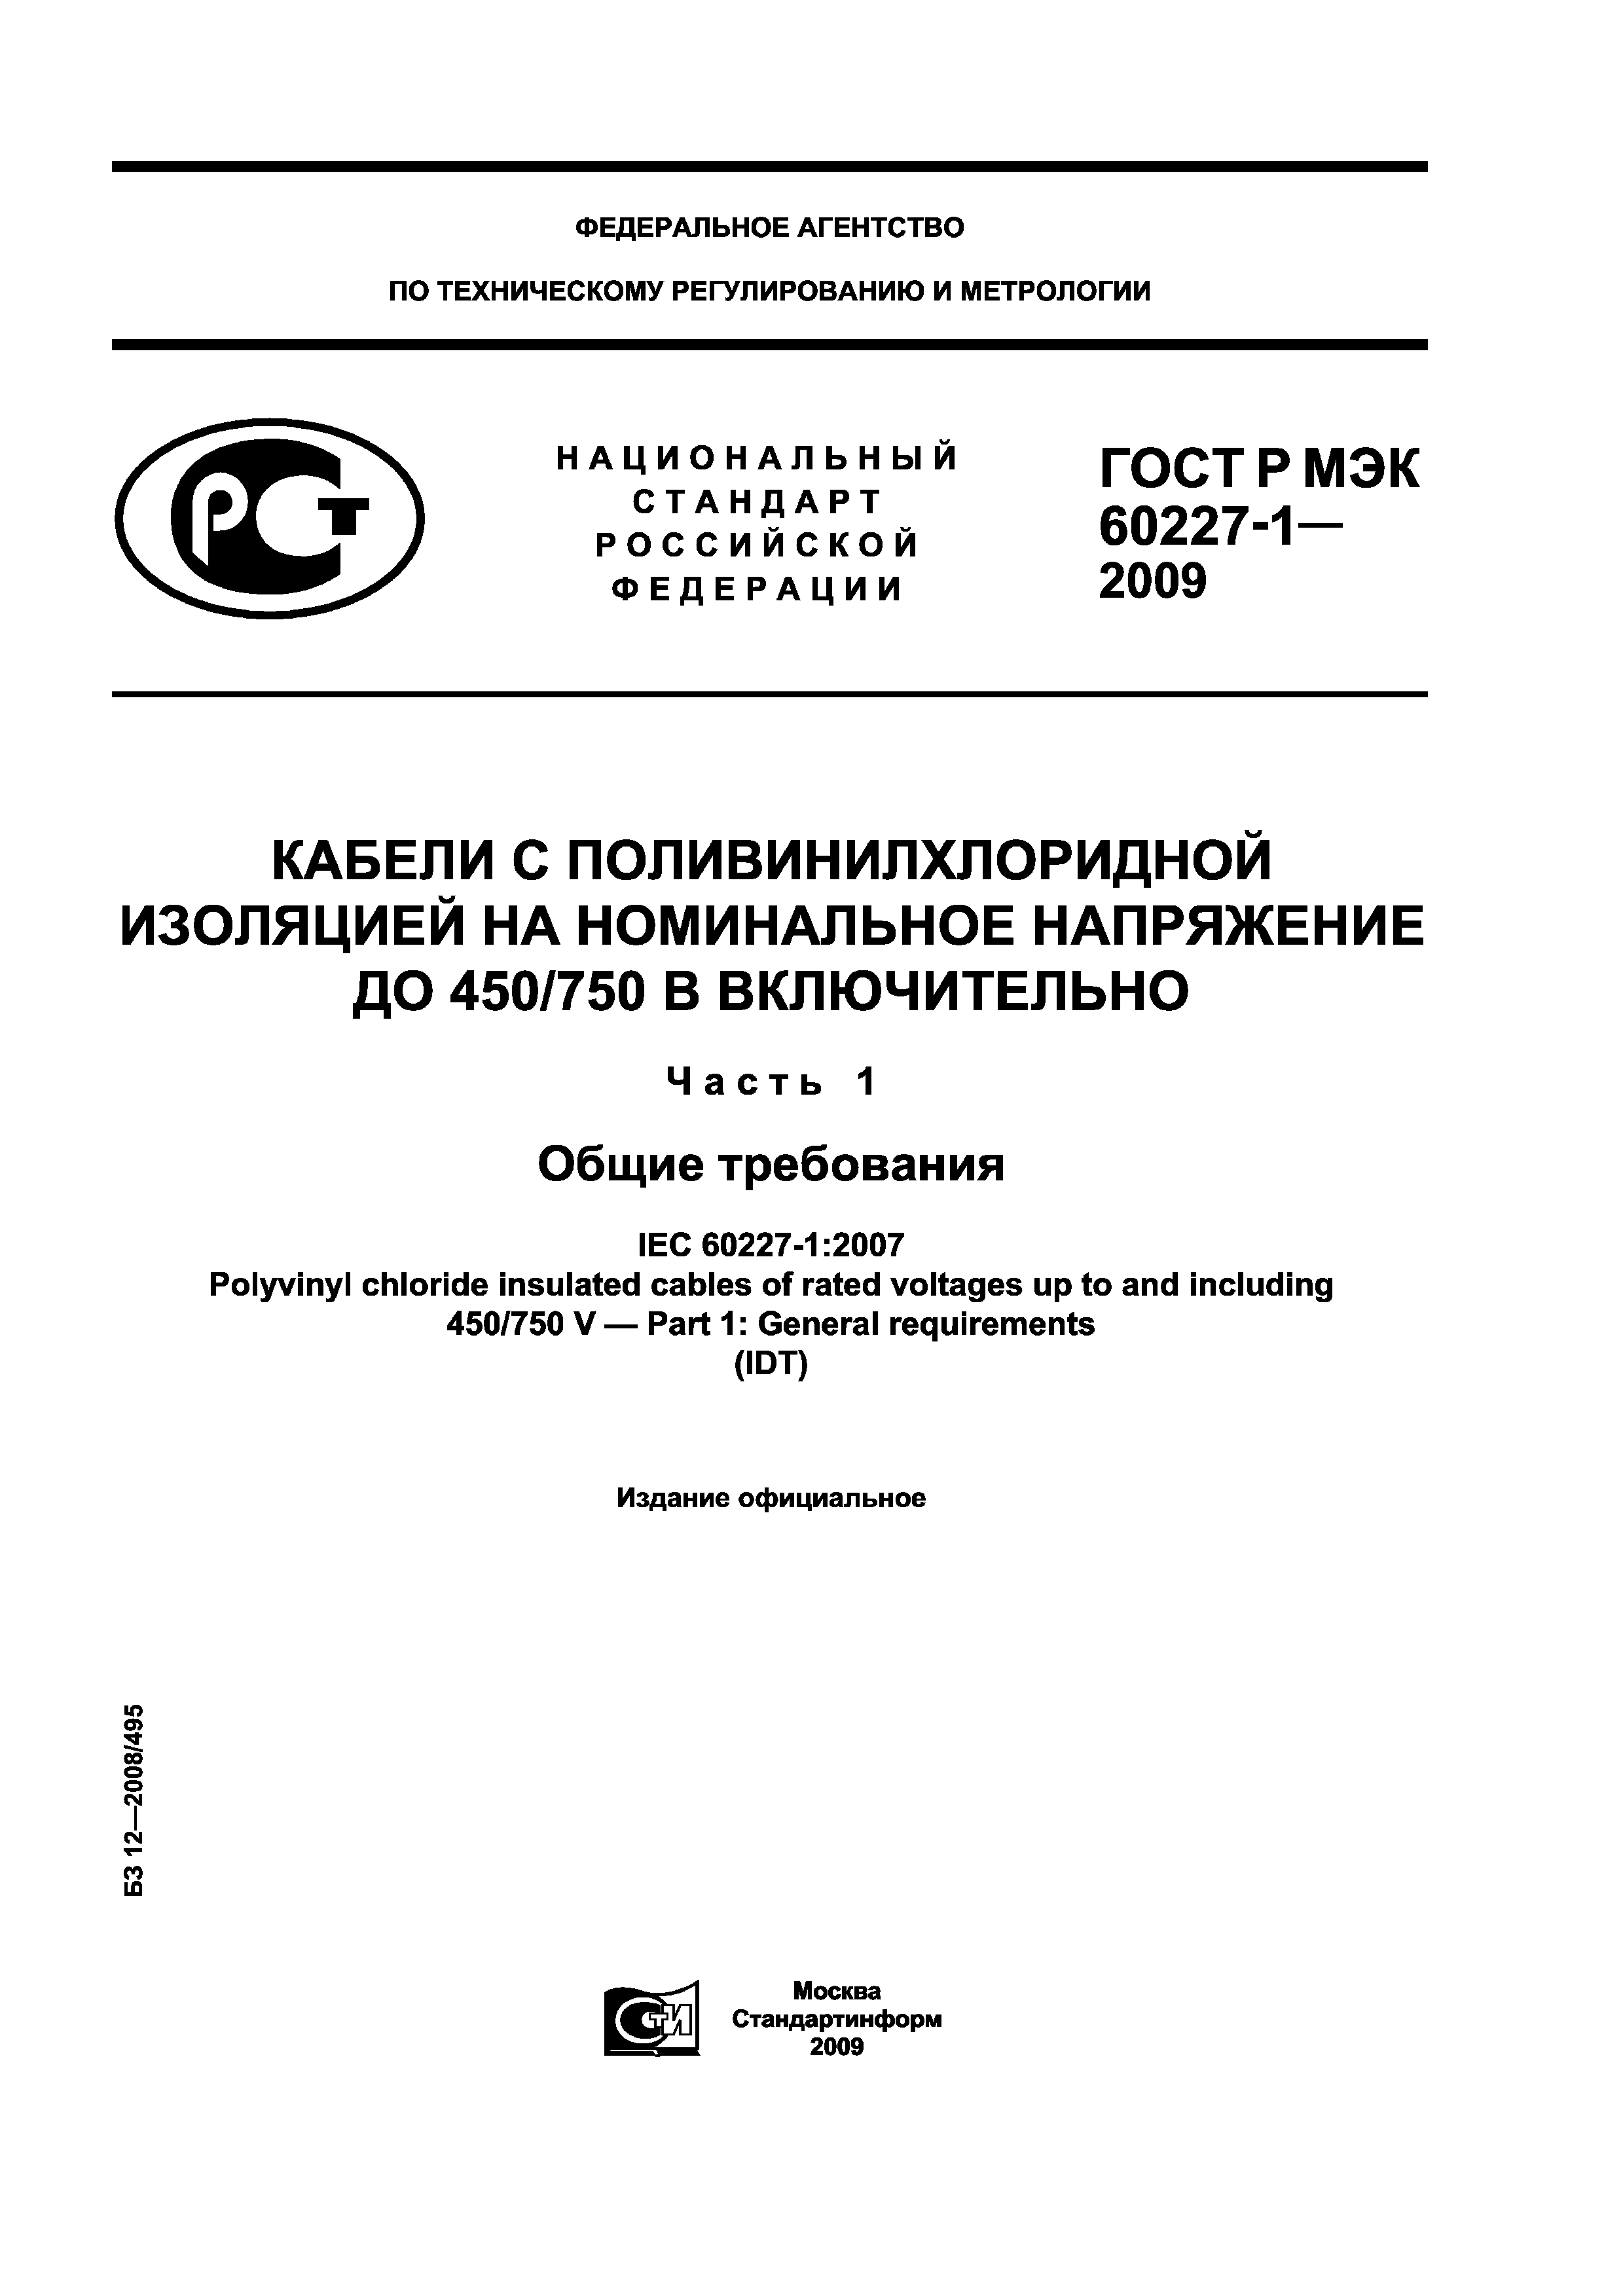 ГОСТ Р МЭК 60227-1-2009